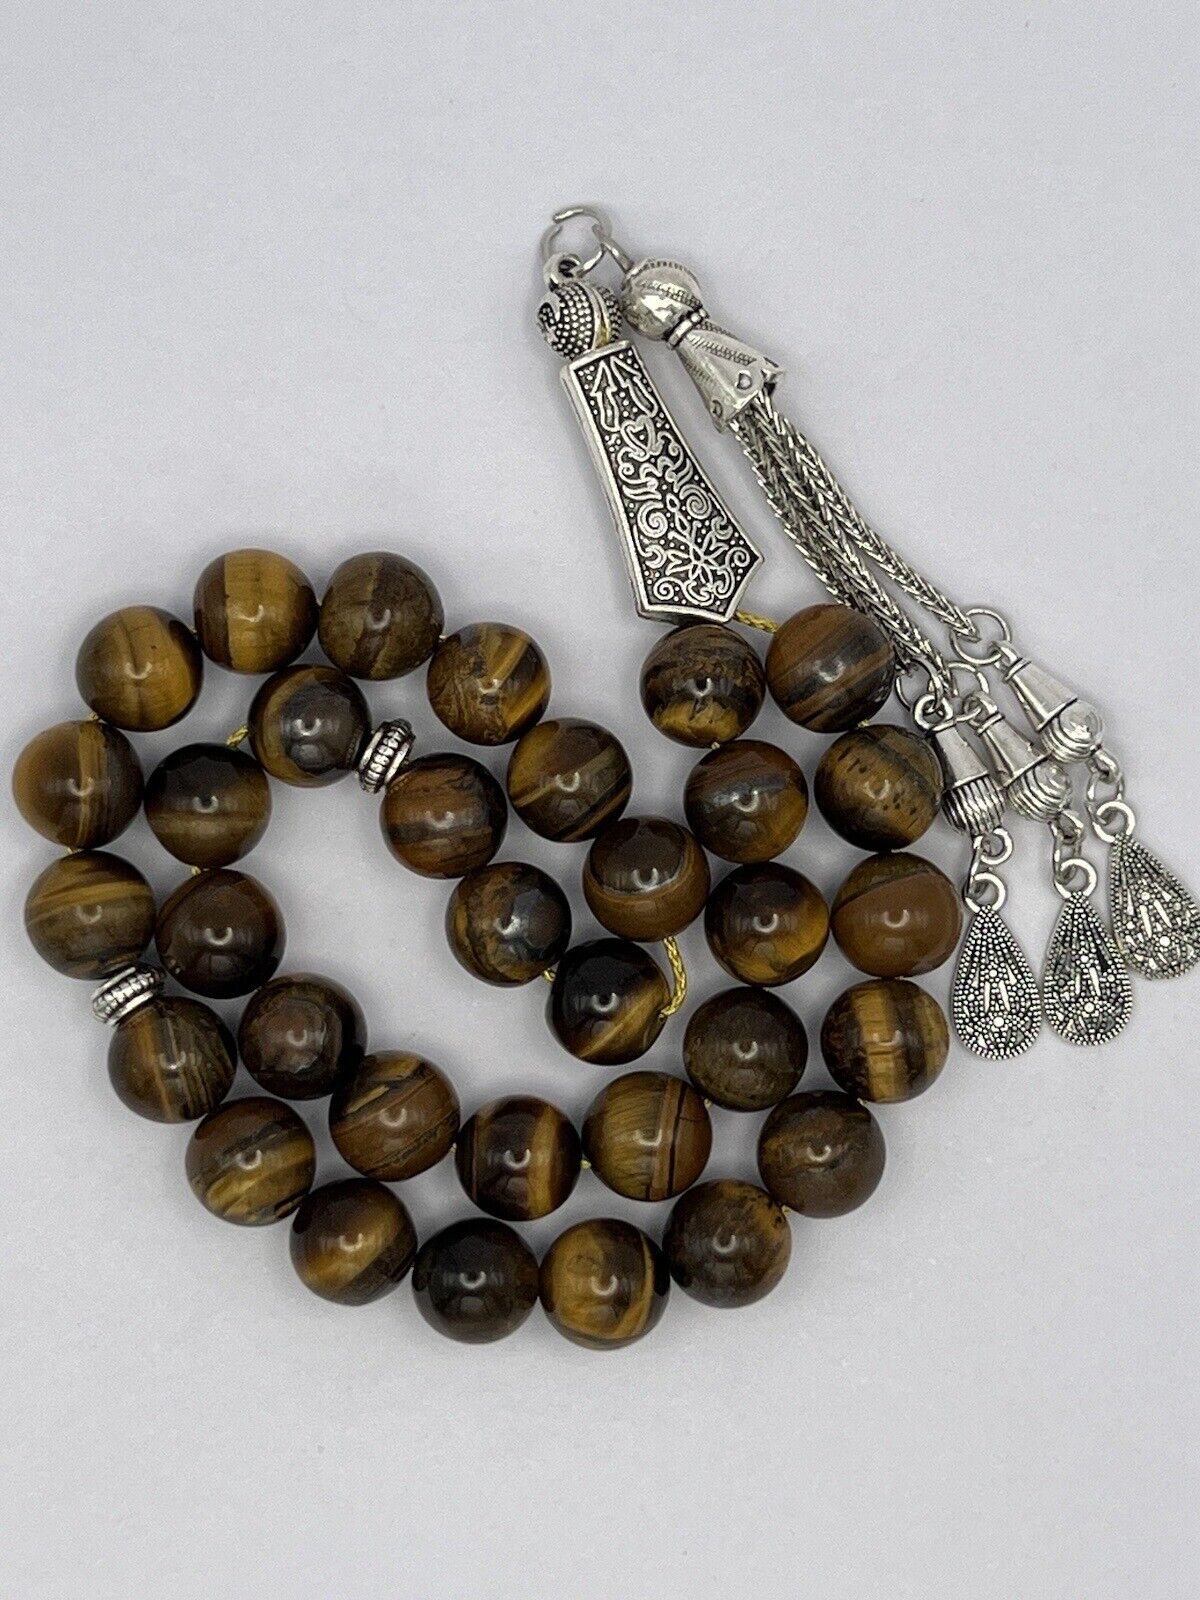 Tiger Eye Gemstone Misbaha Tasbih Rosary Prayer Beads سبحه مسبحة حجر عين النمر